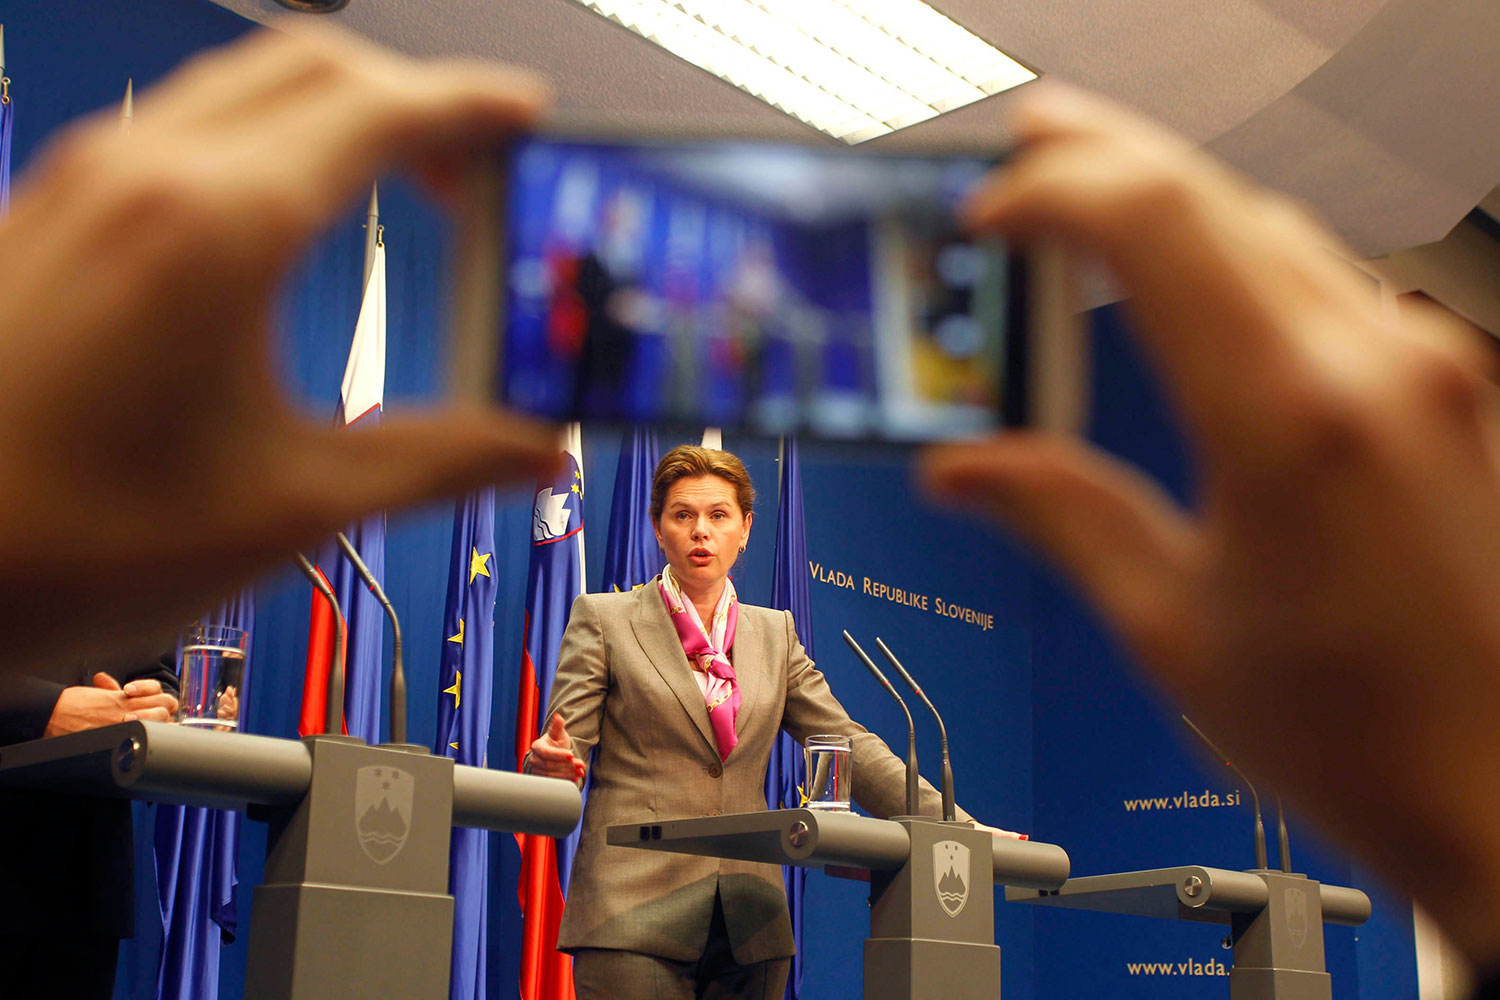 La primera ministra eslovena anuncia su dimisión en Twitter